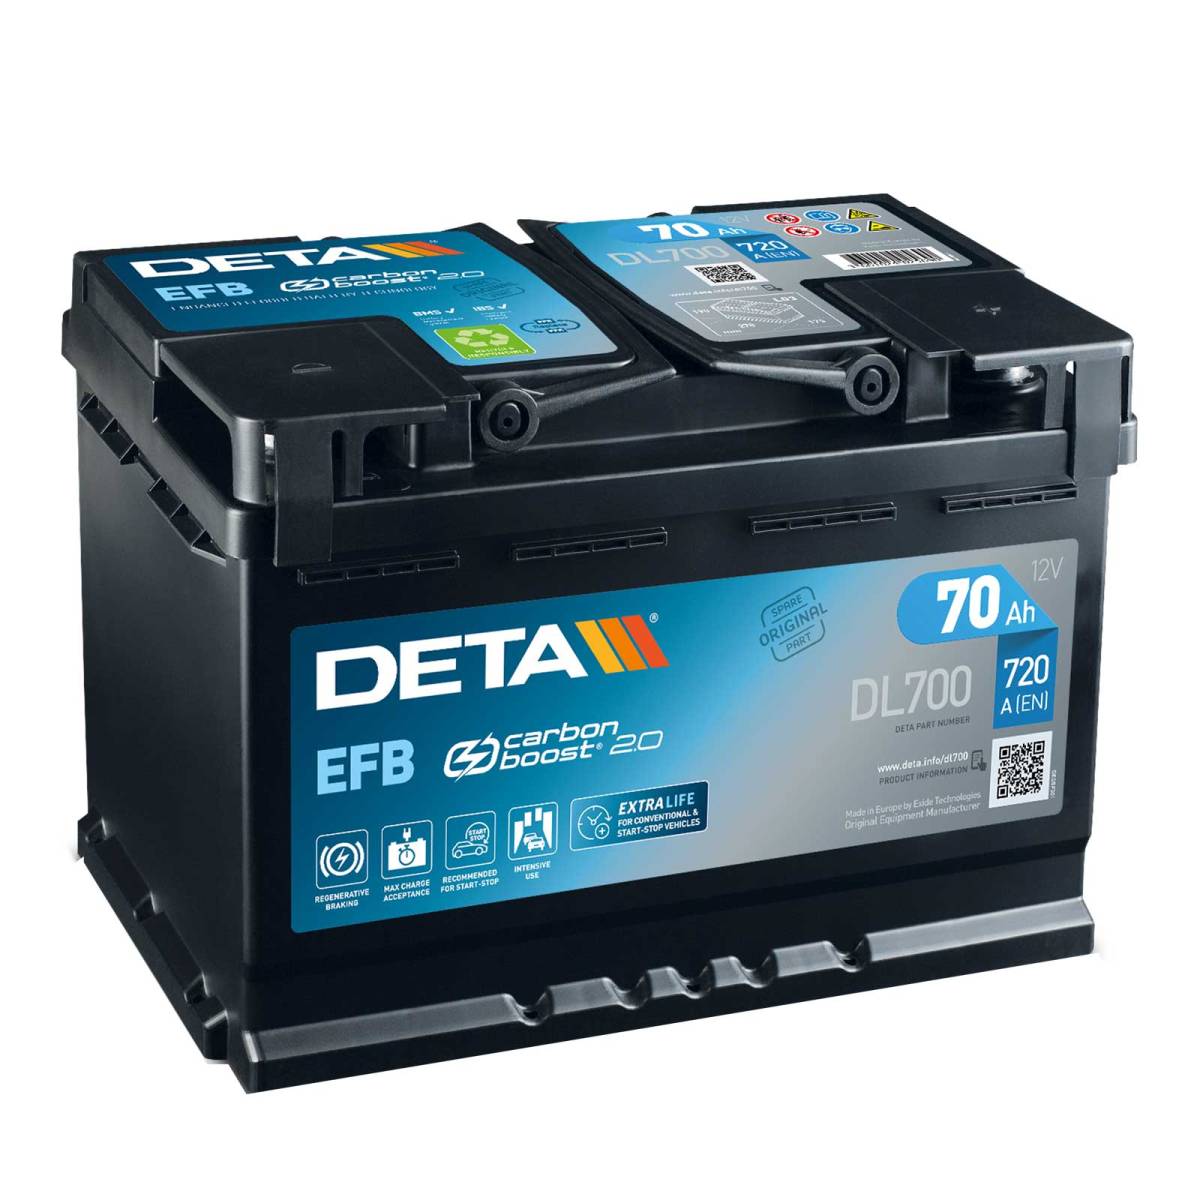 Batteria auto DETA DL700 Start-Stop EFB 12V 70Ah 720A ordina su Batterie -Online.it